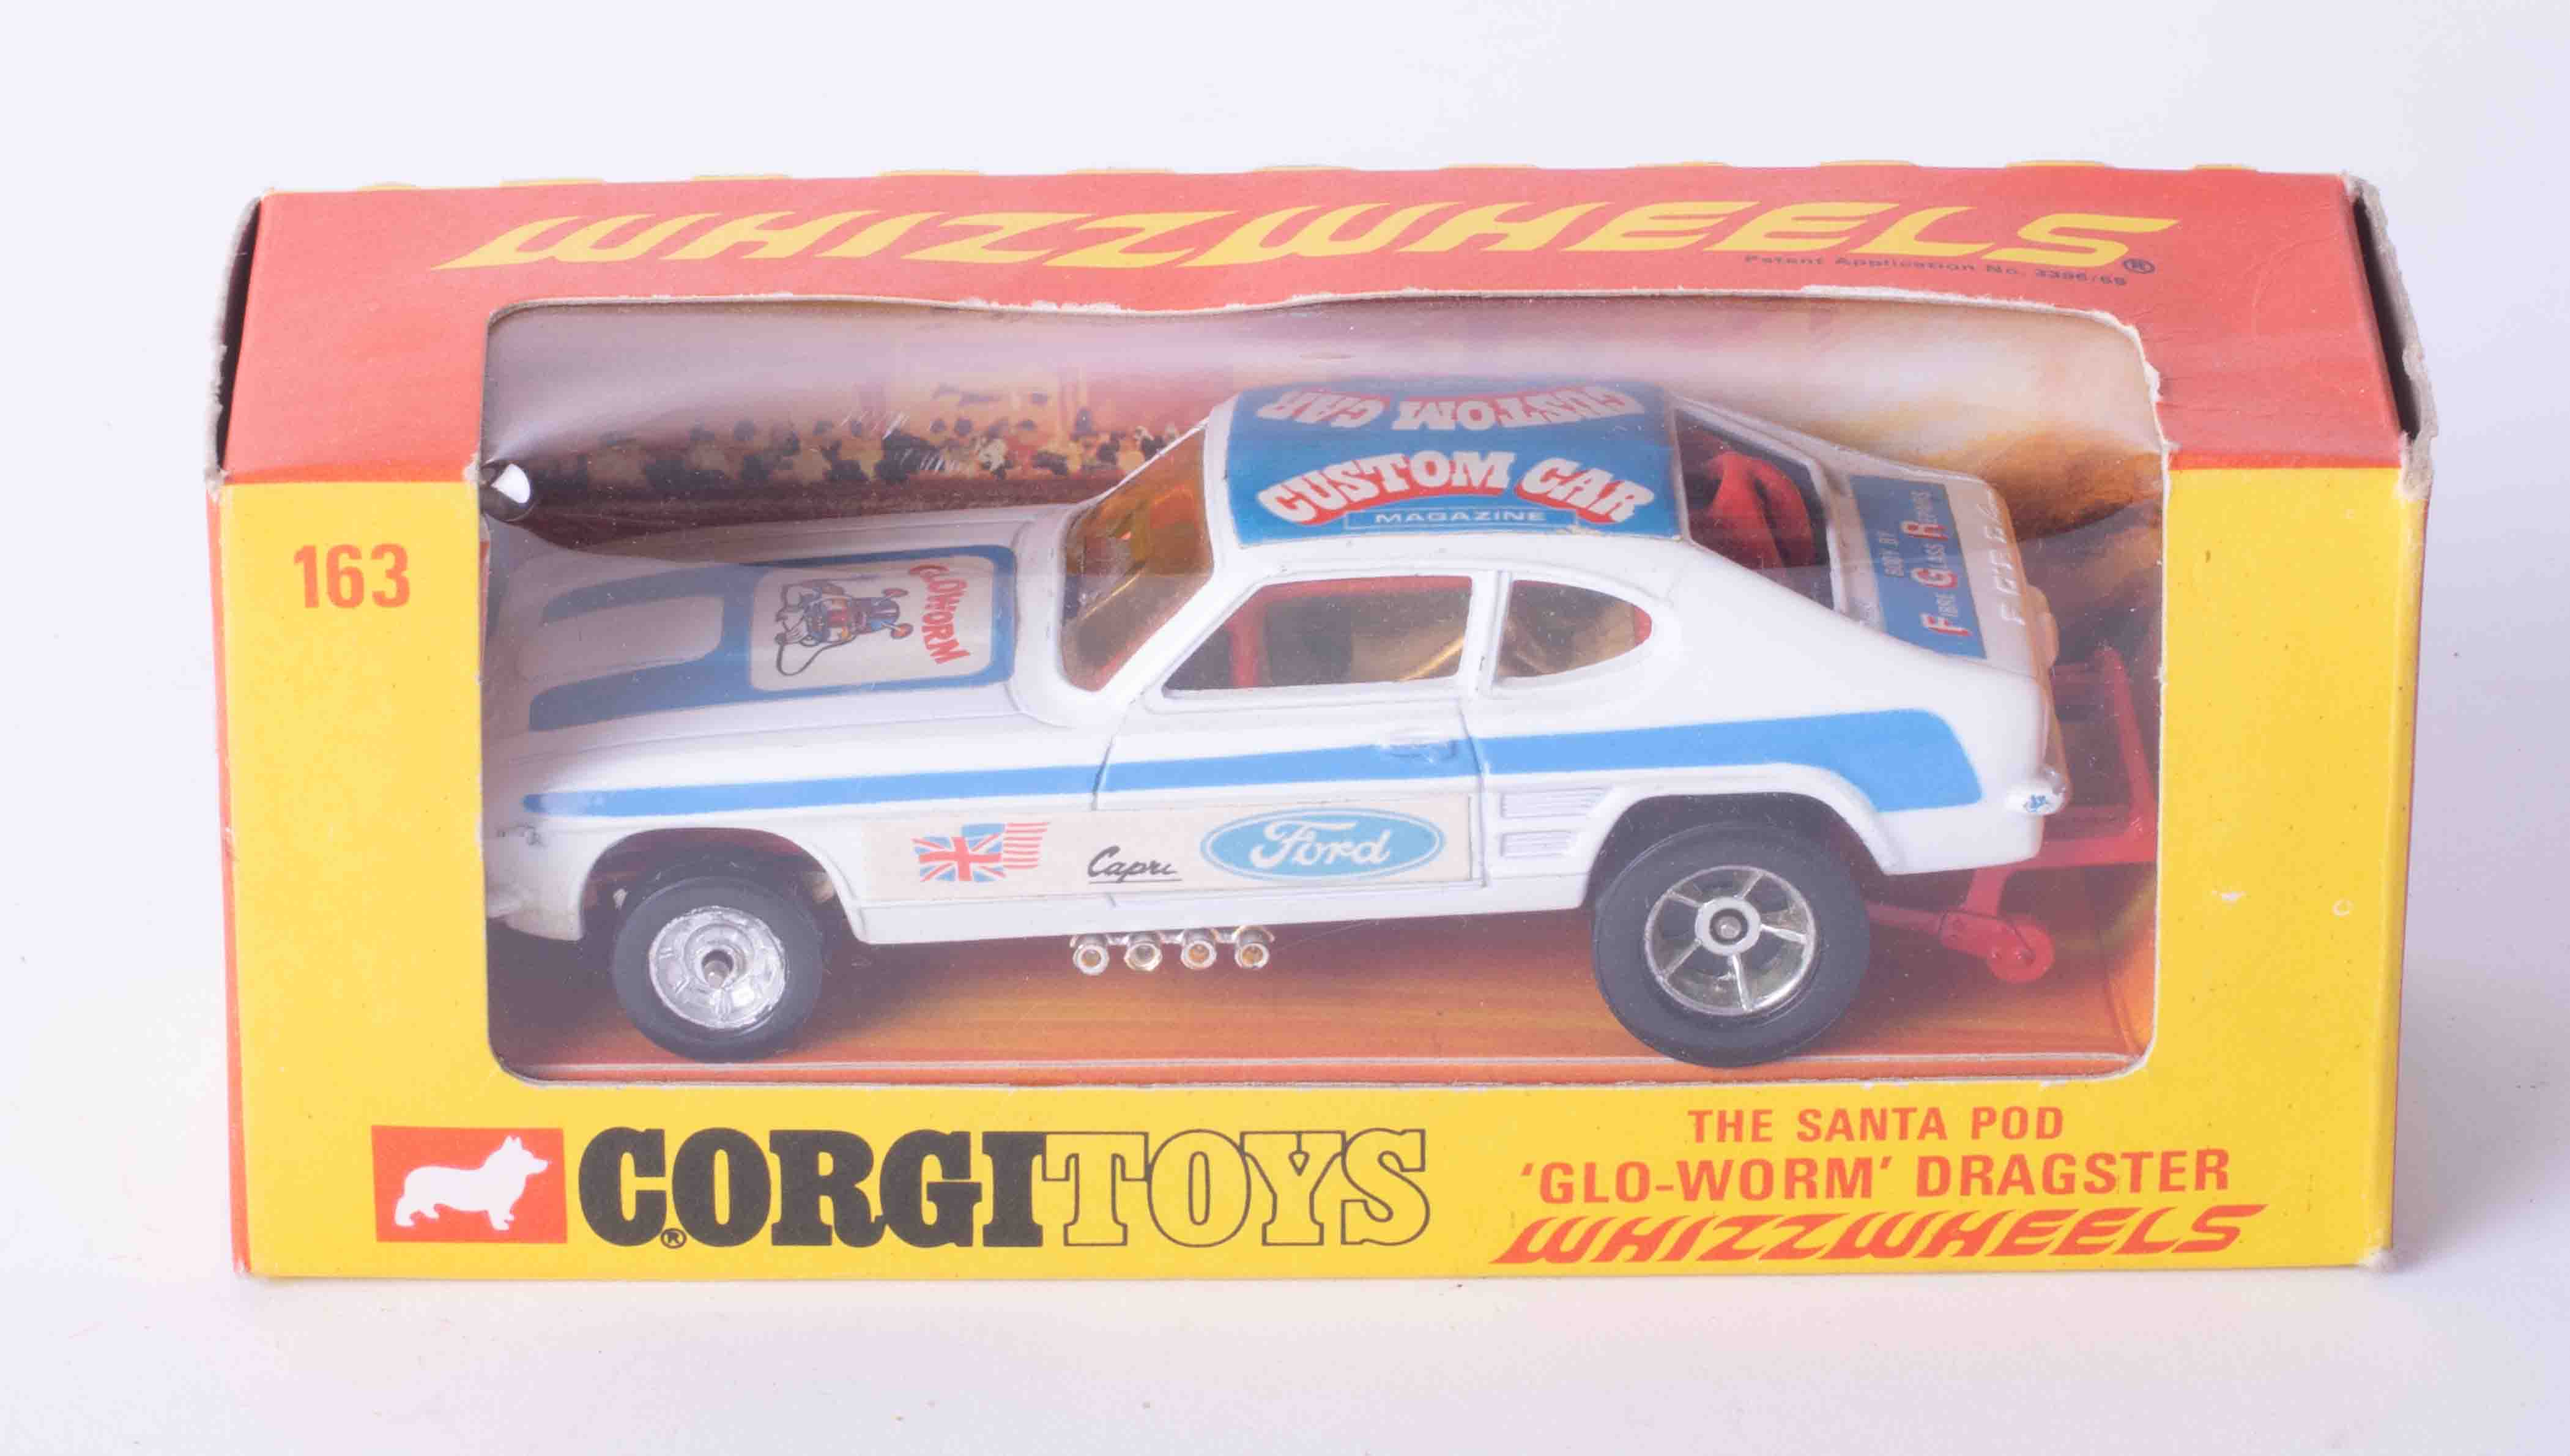 Corgi Toys Whizzwheels 163 The Santa Pod Dragster, boxed.